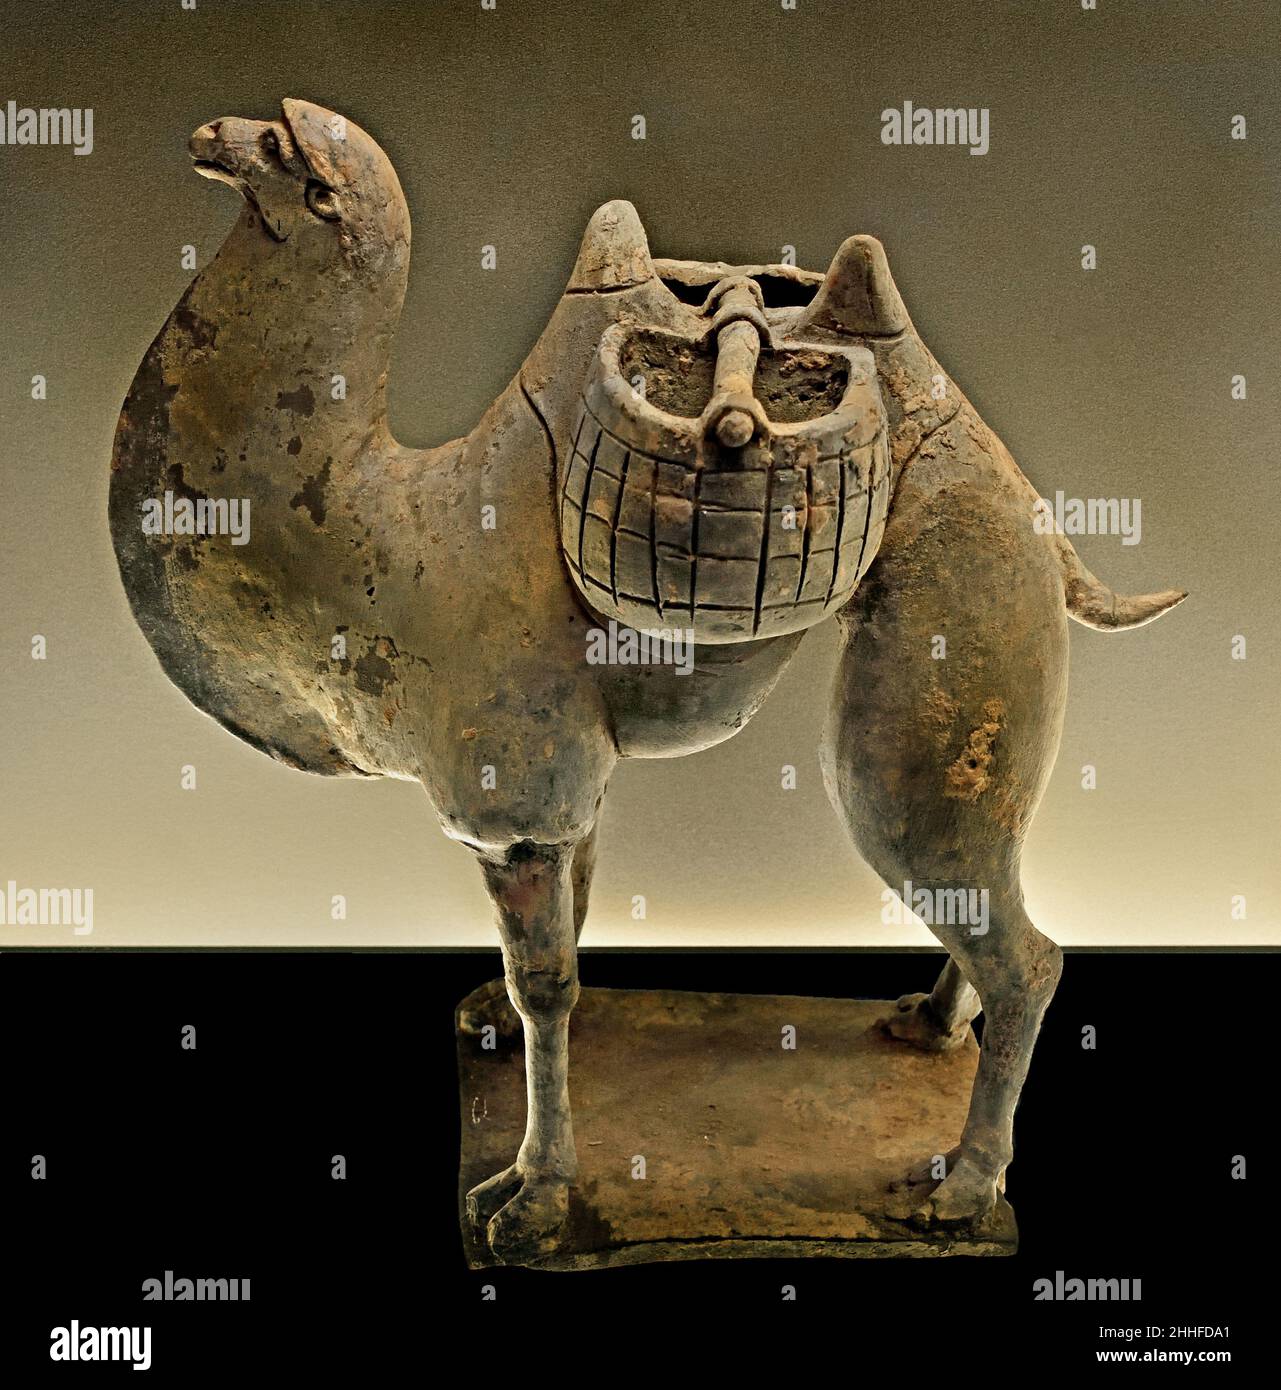 Kamel mit zwei Körben, Henan - Hebei Nord-oder Ost-Wei, erste Hälfte des 6th. Jahrhunderts Ad grau Steingut China, Chinesisch. Stockfoto